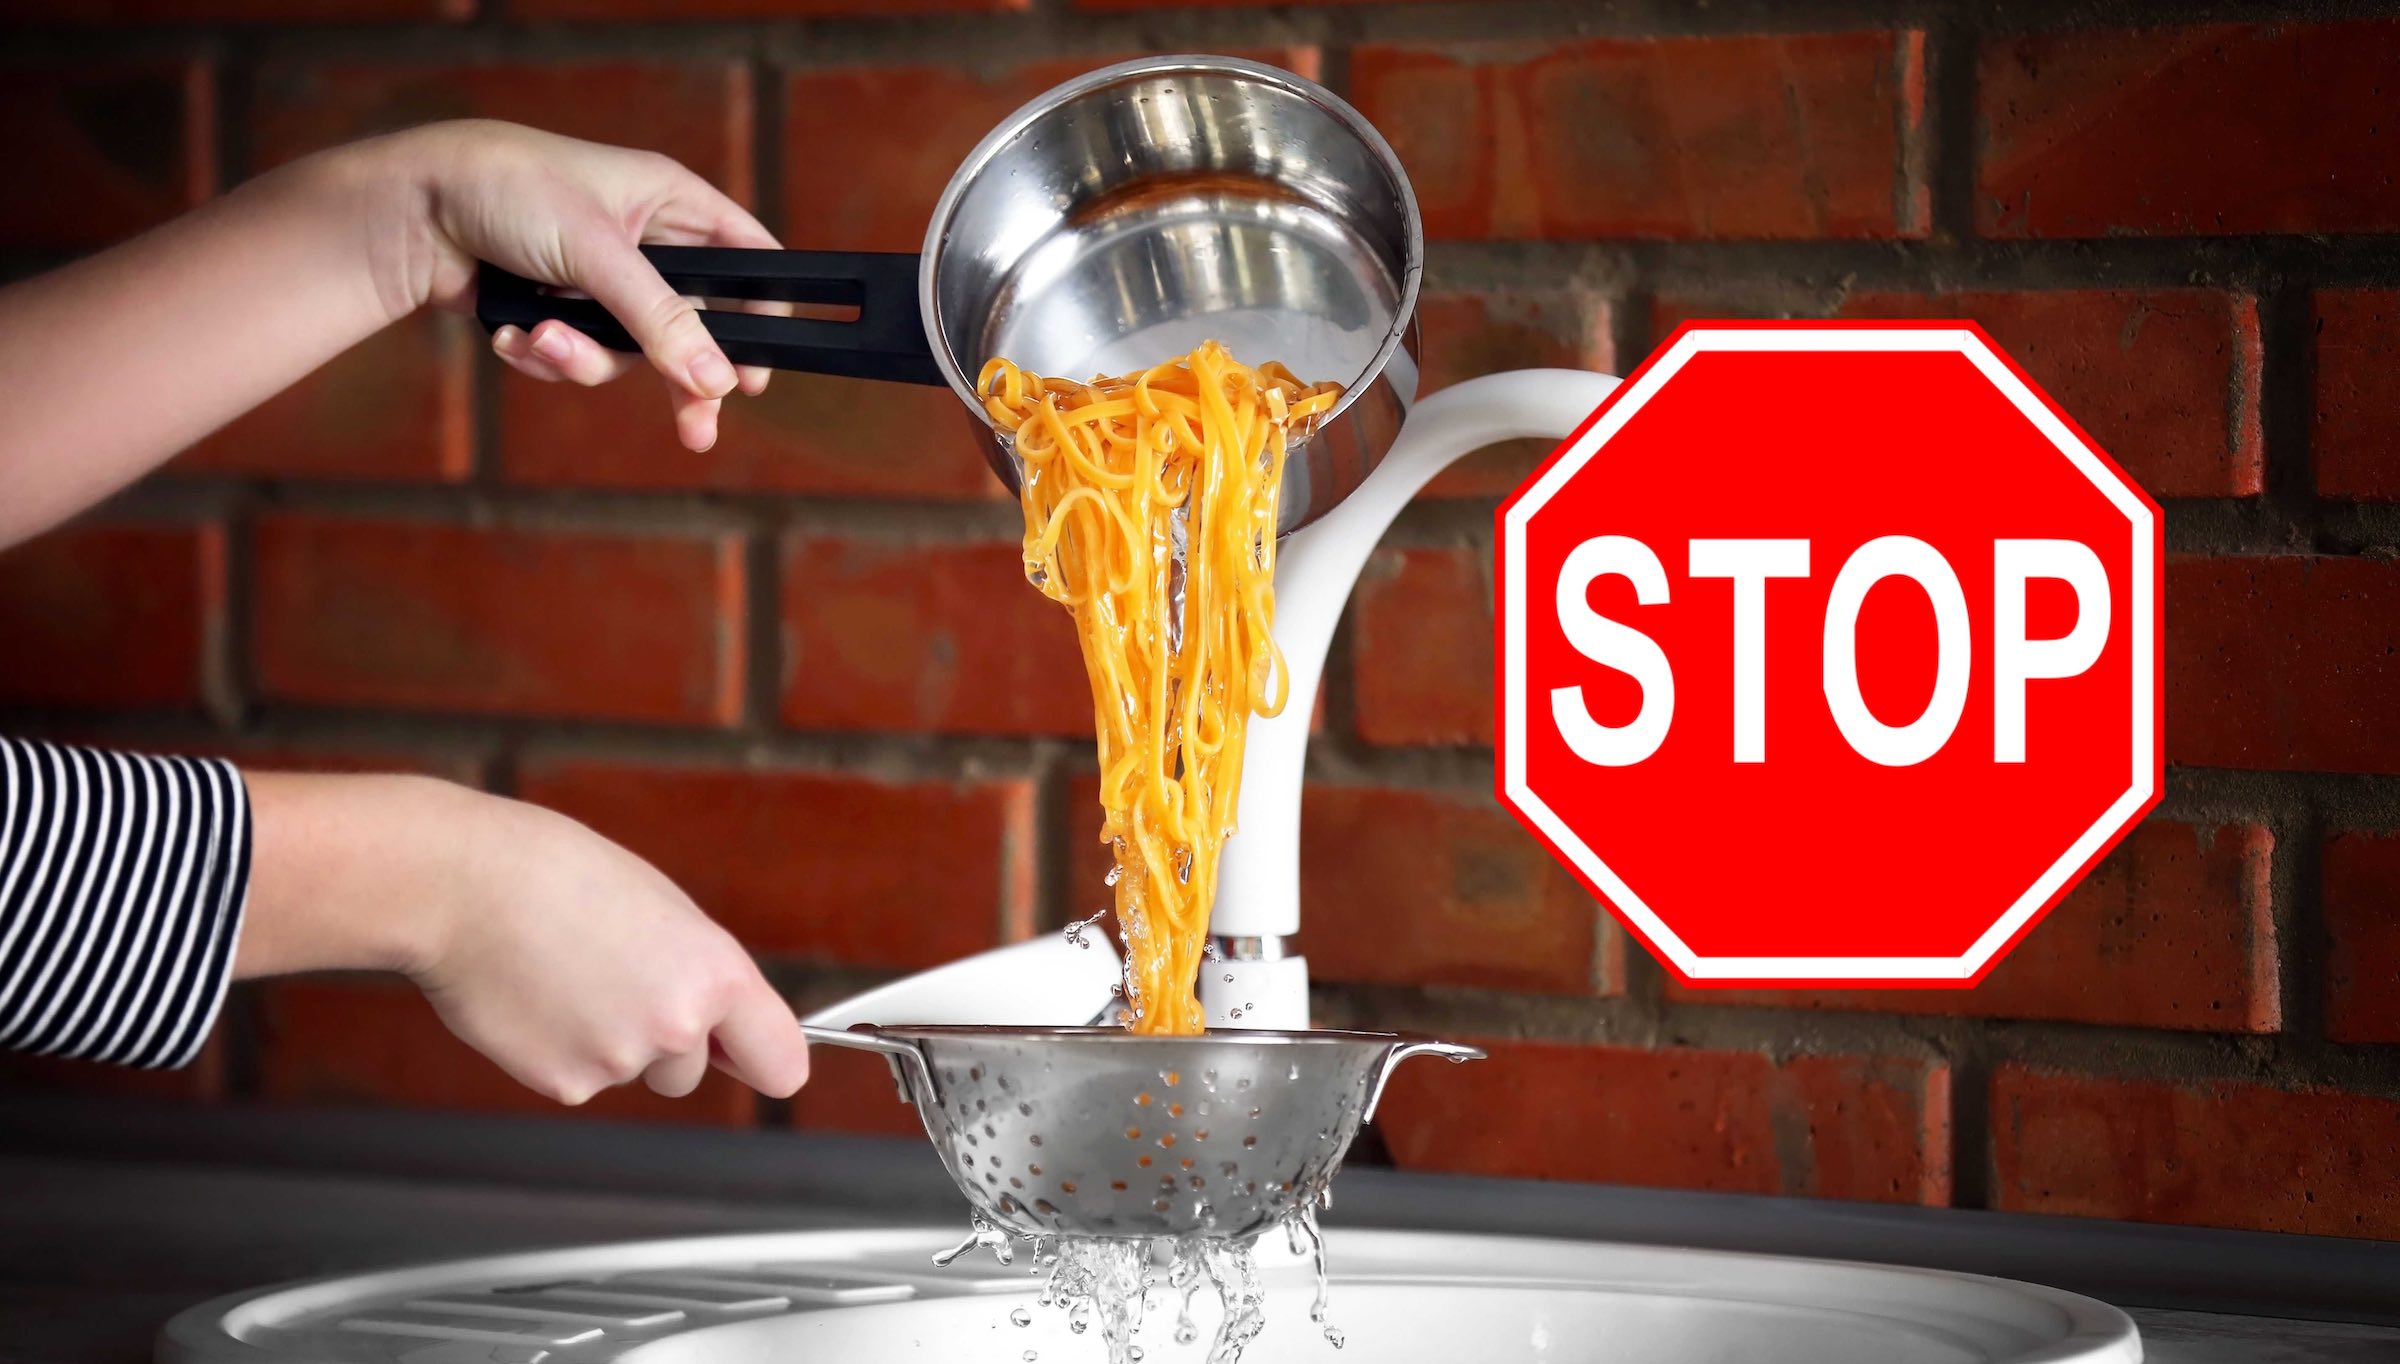 El truco avalado por la ciencia para cocer pasta ahorrando agua